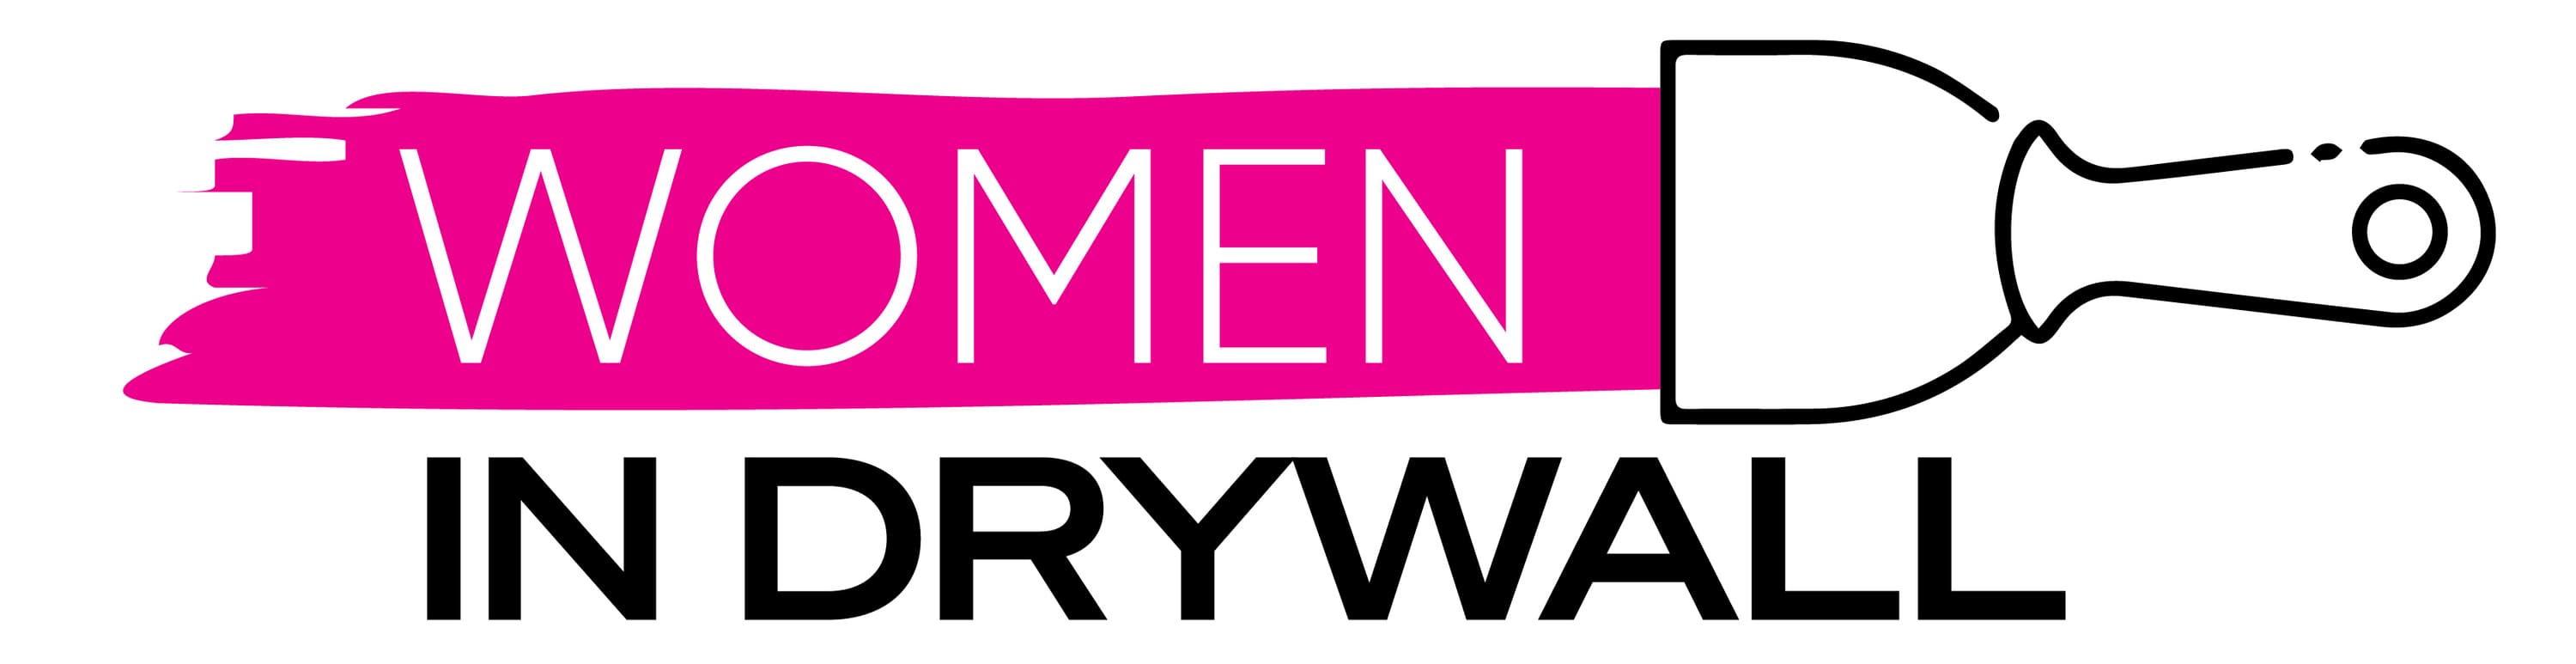 2021 Women in Drywall logo